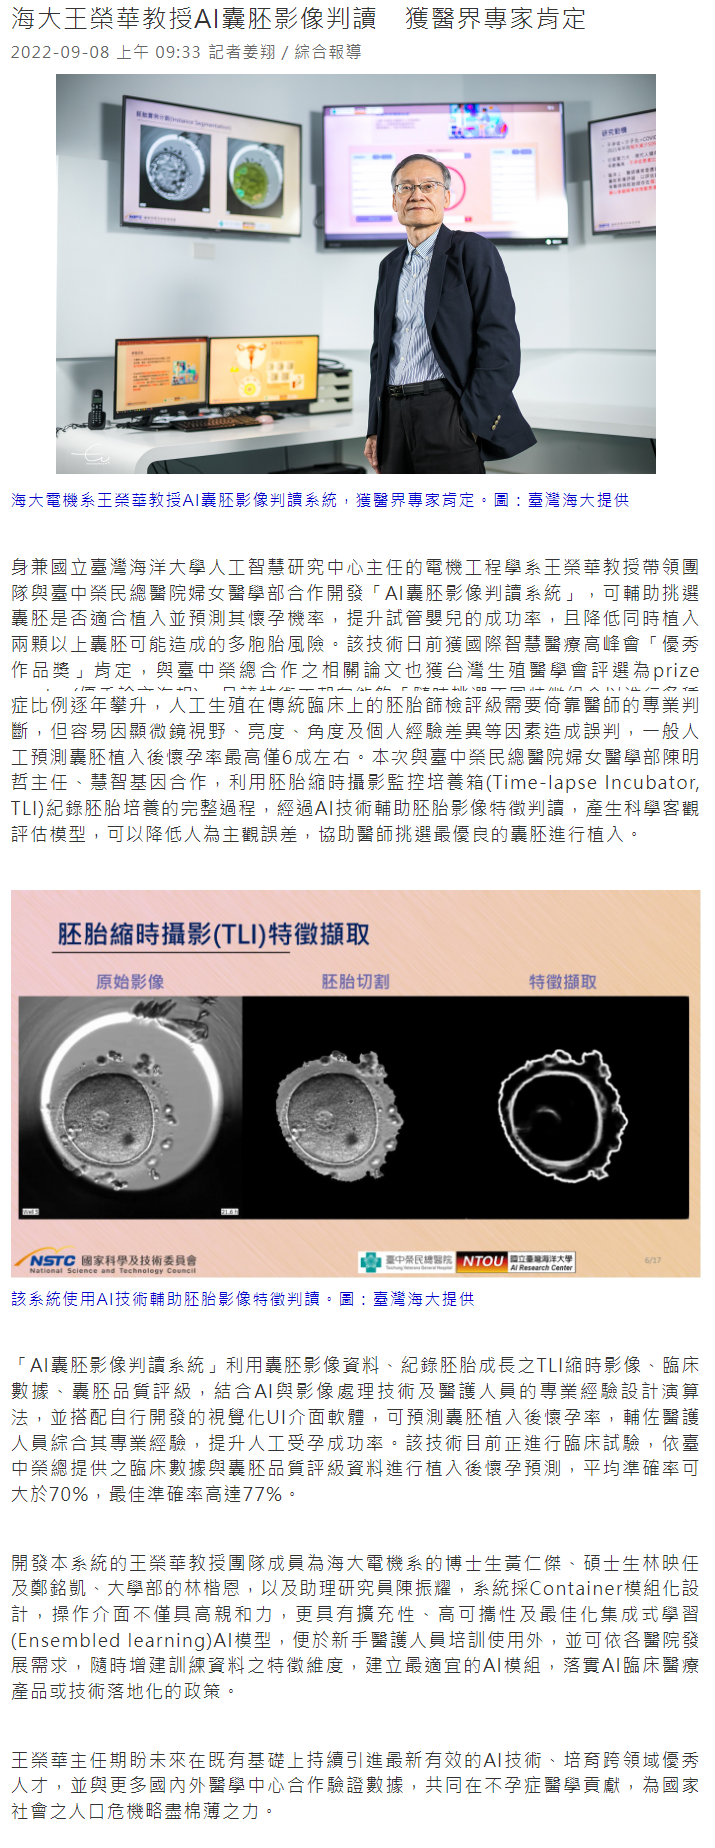 海大王榮華教授AI囊胚影像判讀　獲醫界專家肯定│產經新聞網